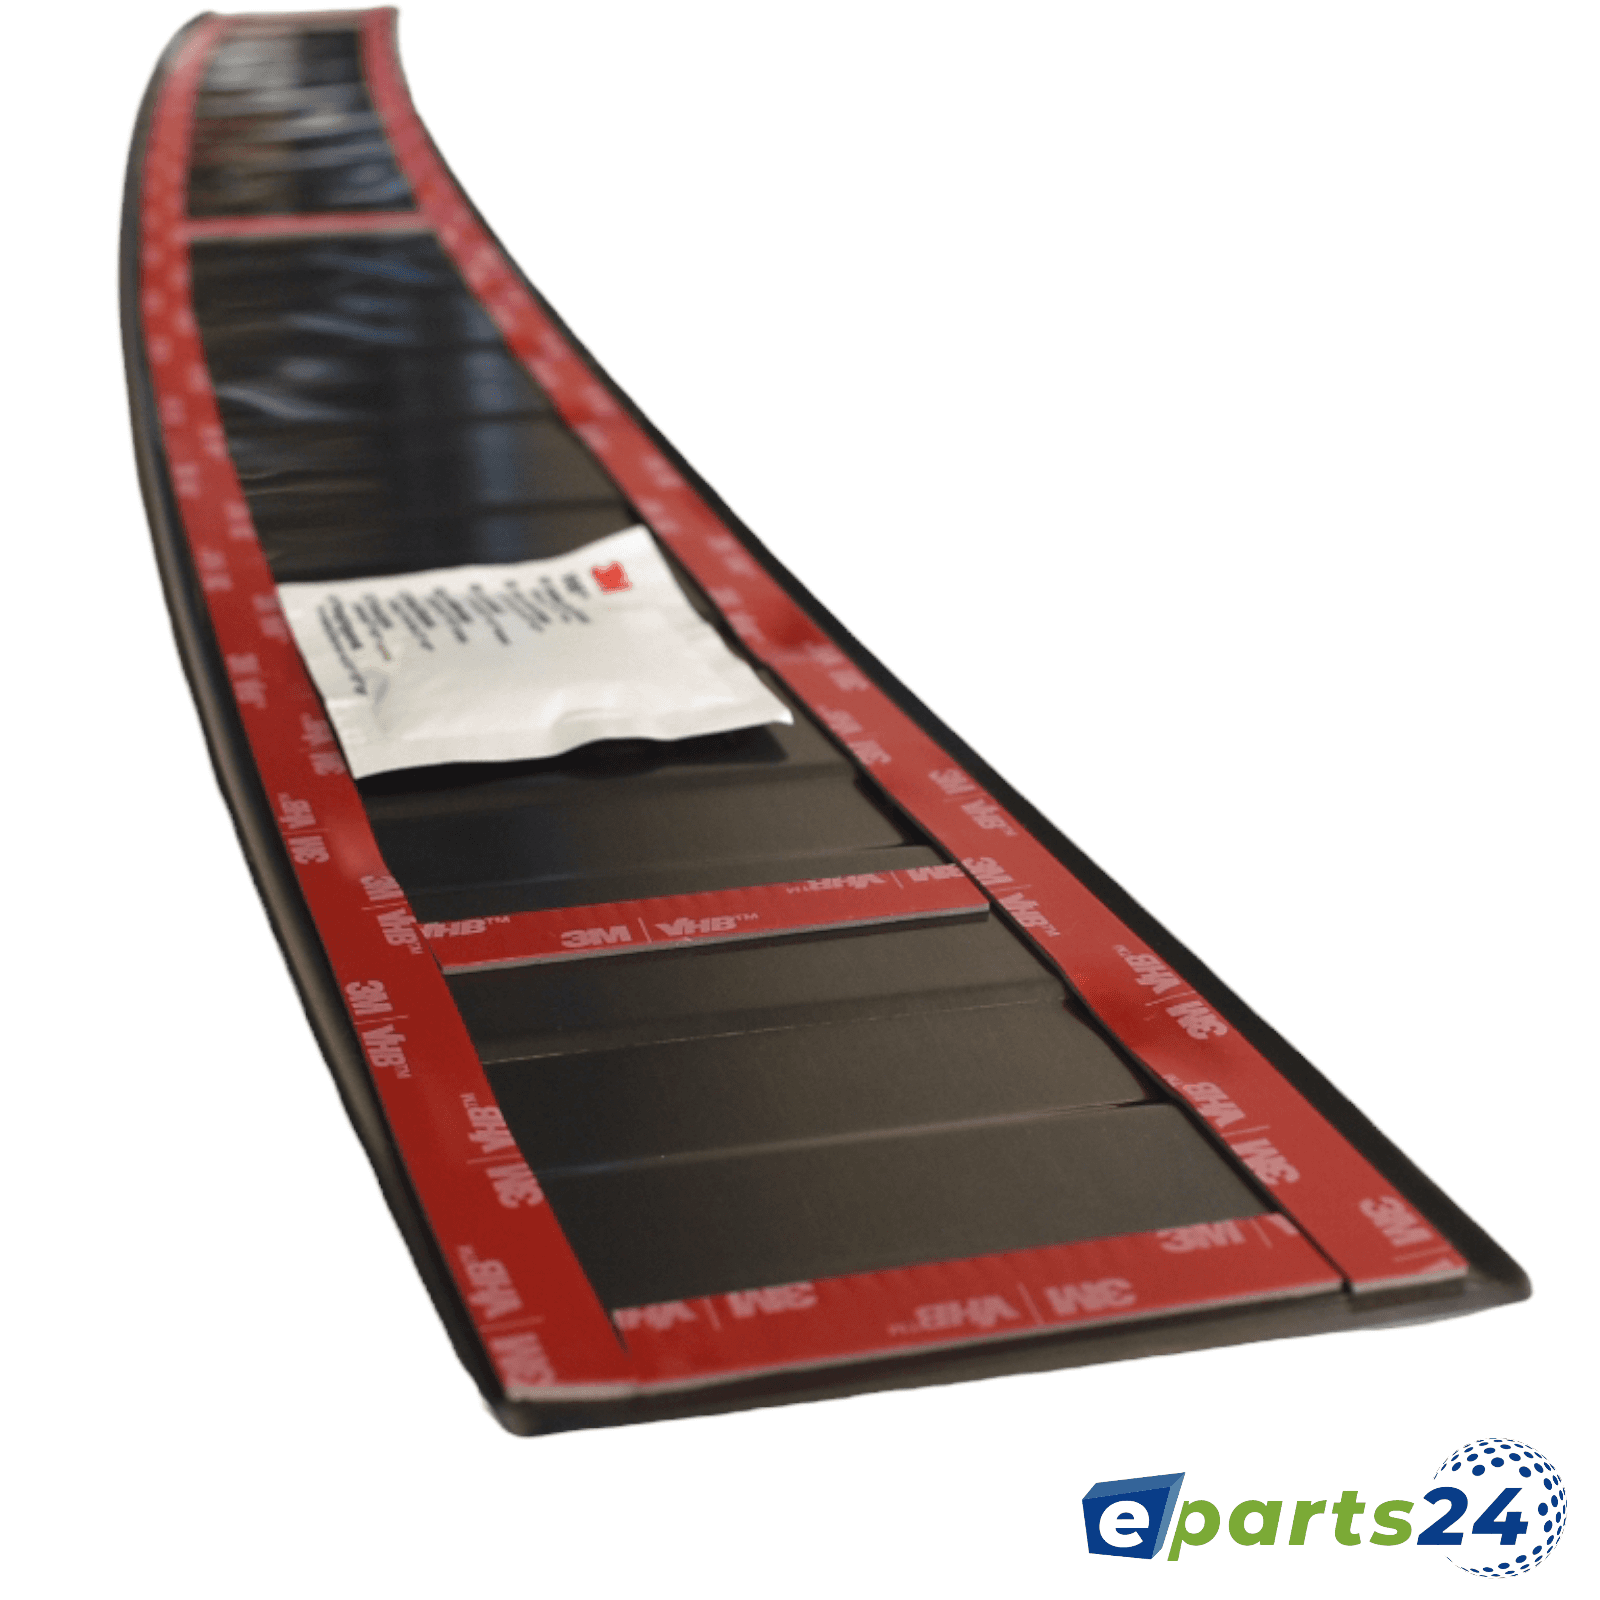 Ladekantenschutz Heckschutz pul ab E-Parts24 schwarz matt für Tarraco 2018- – Seat